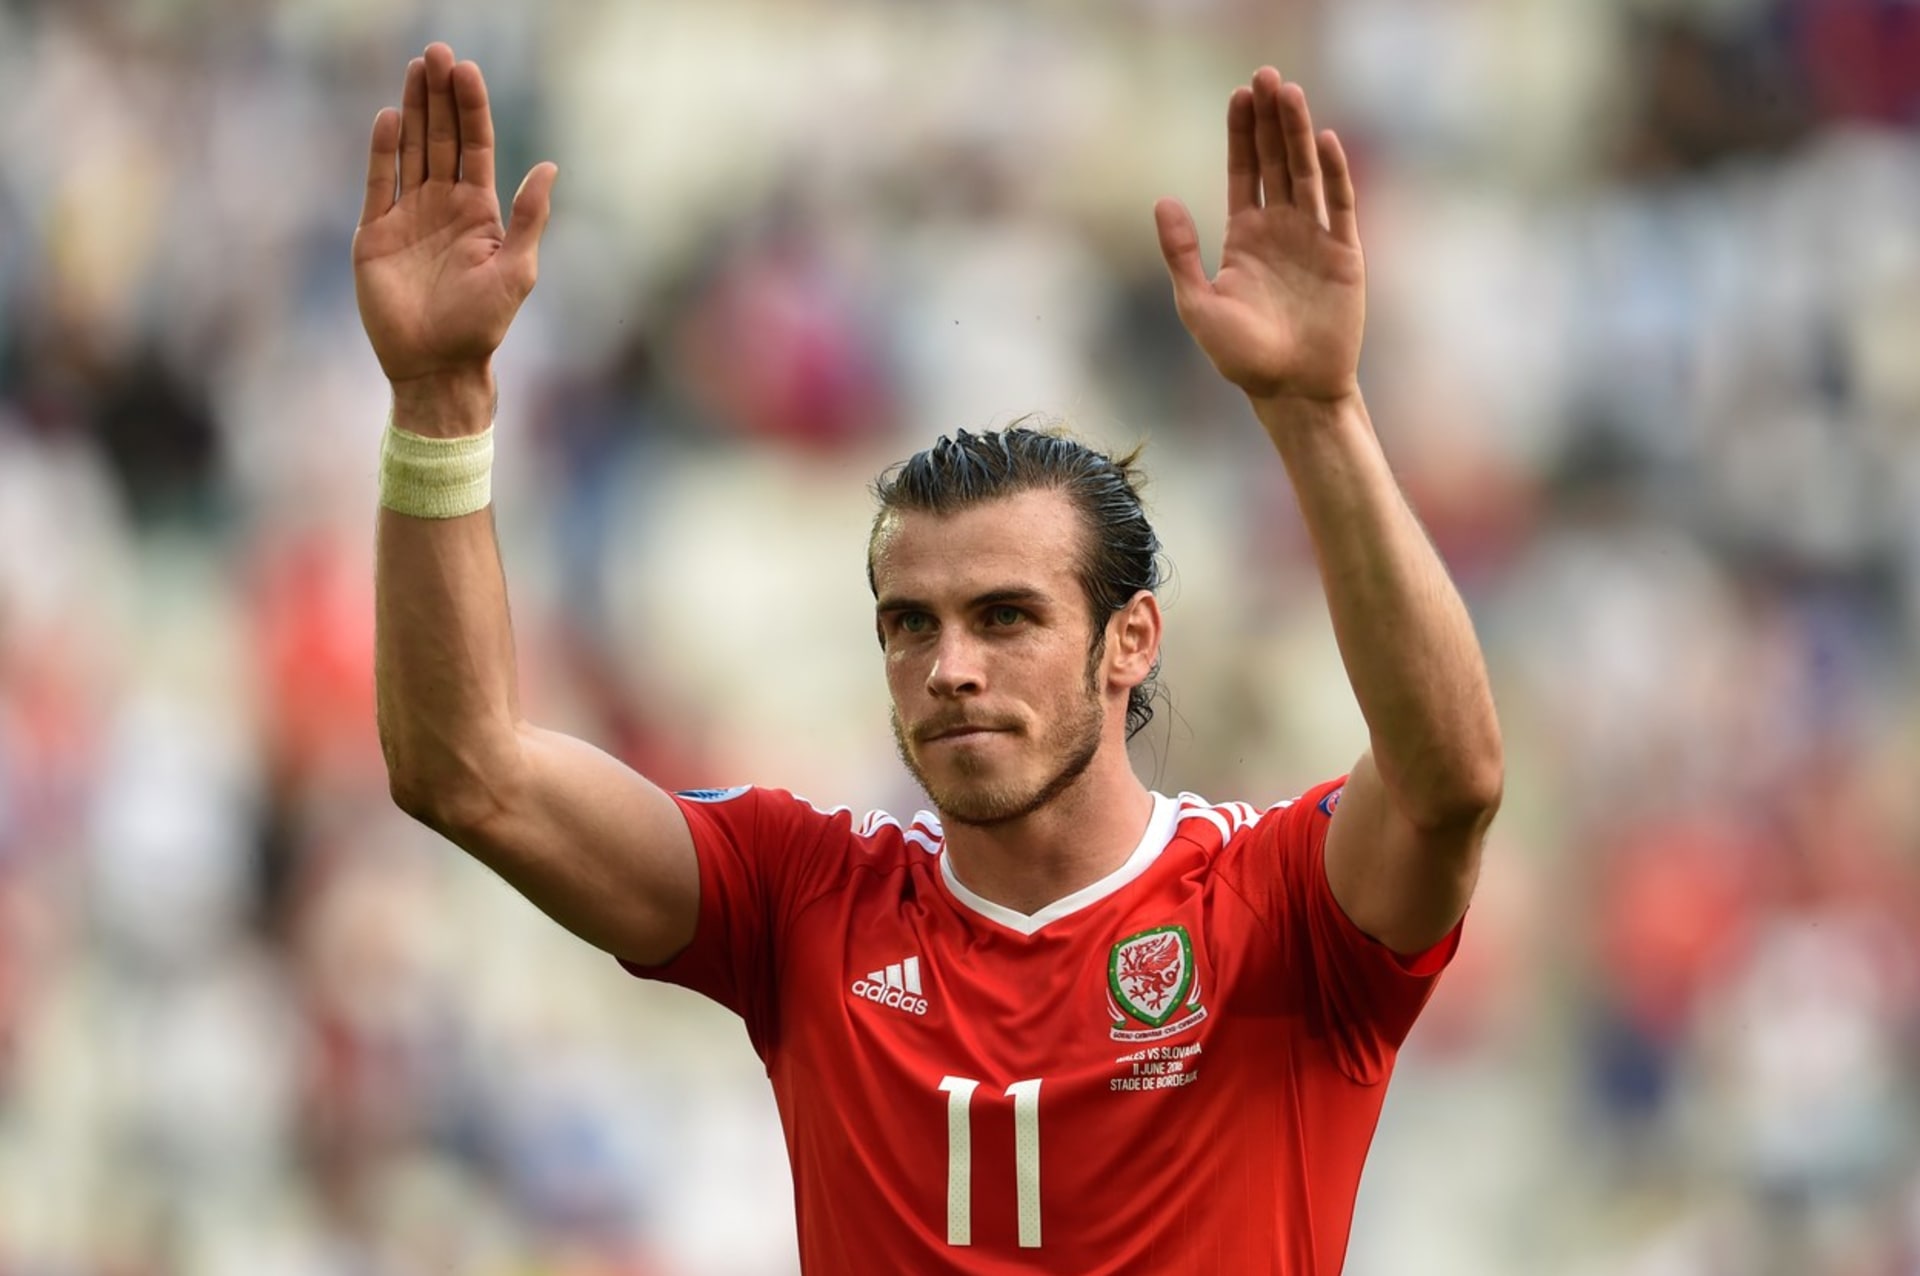 Gareth Bale v dresu národního týmu Walesu.